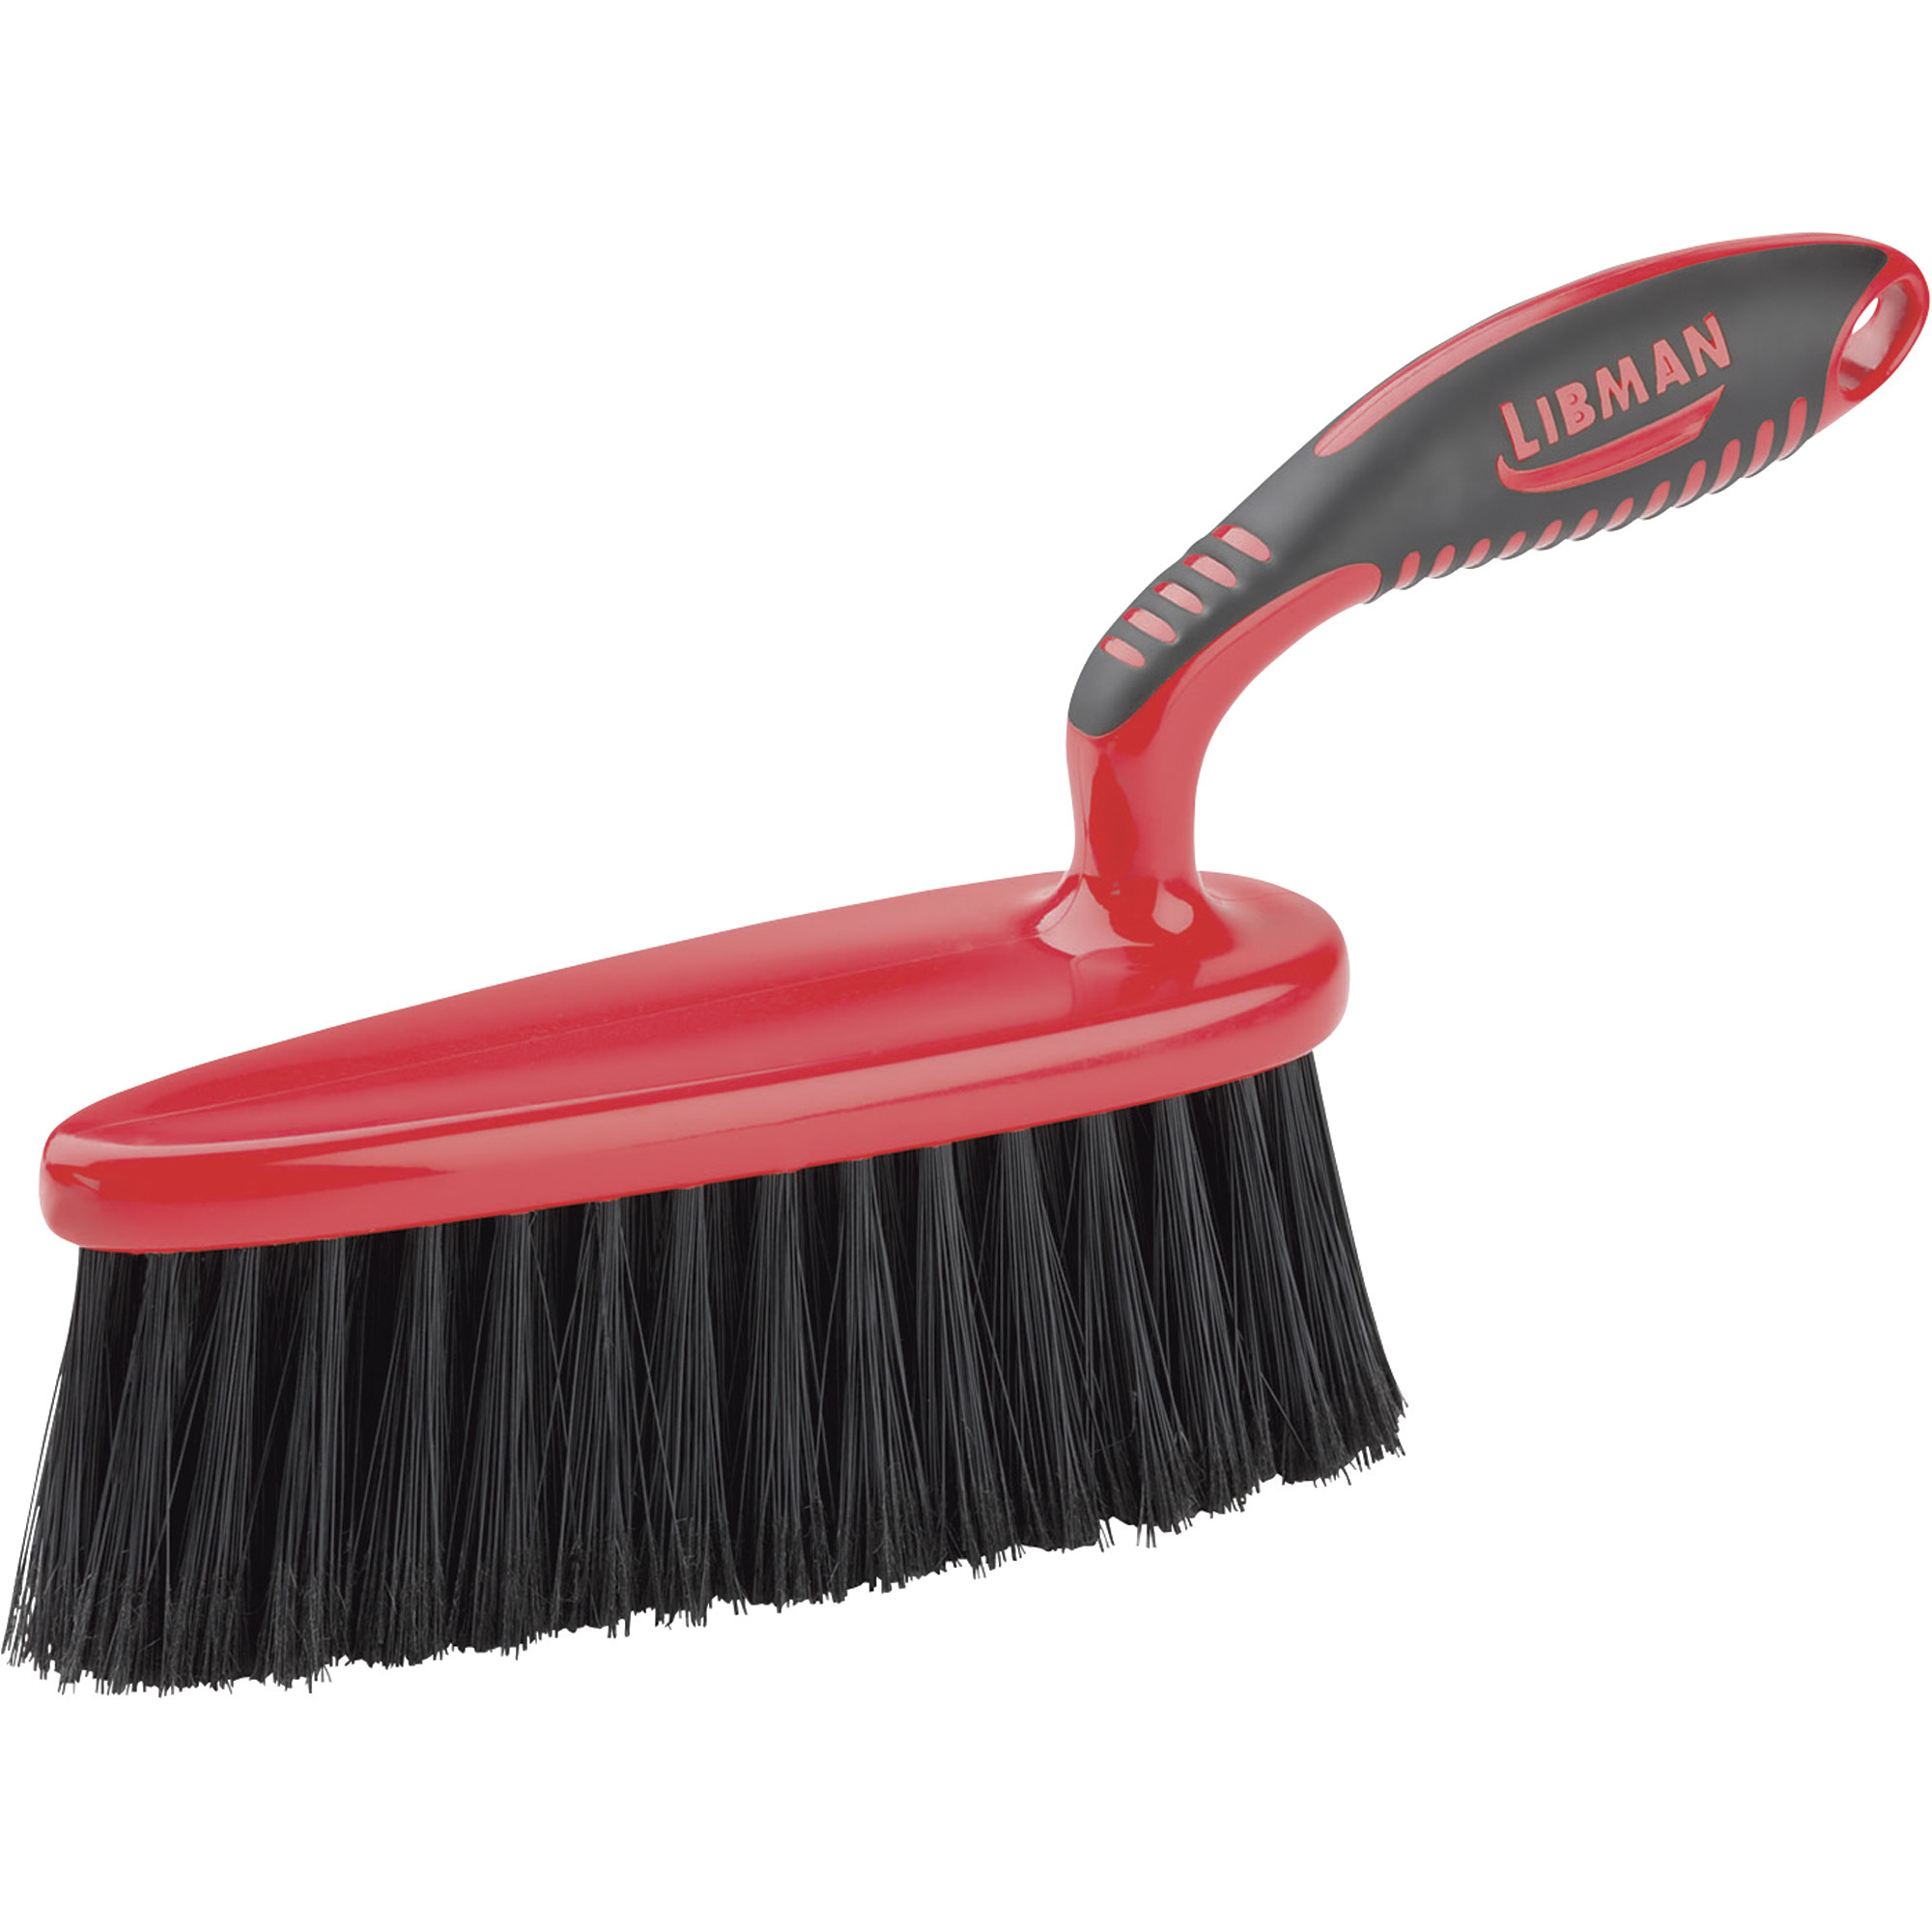 Libman Workbench Dust Brush - 5in.L Handle, Model# 526